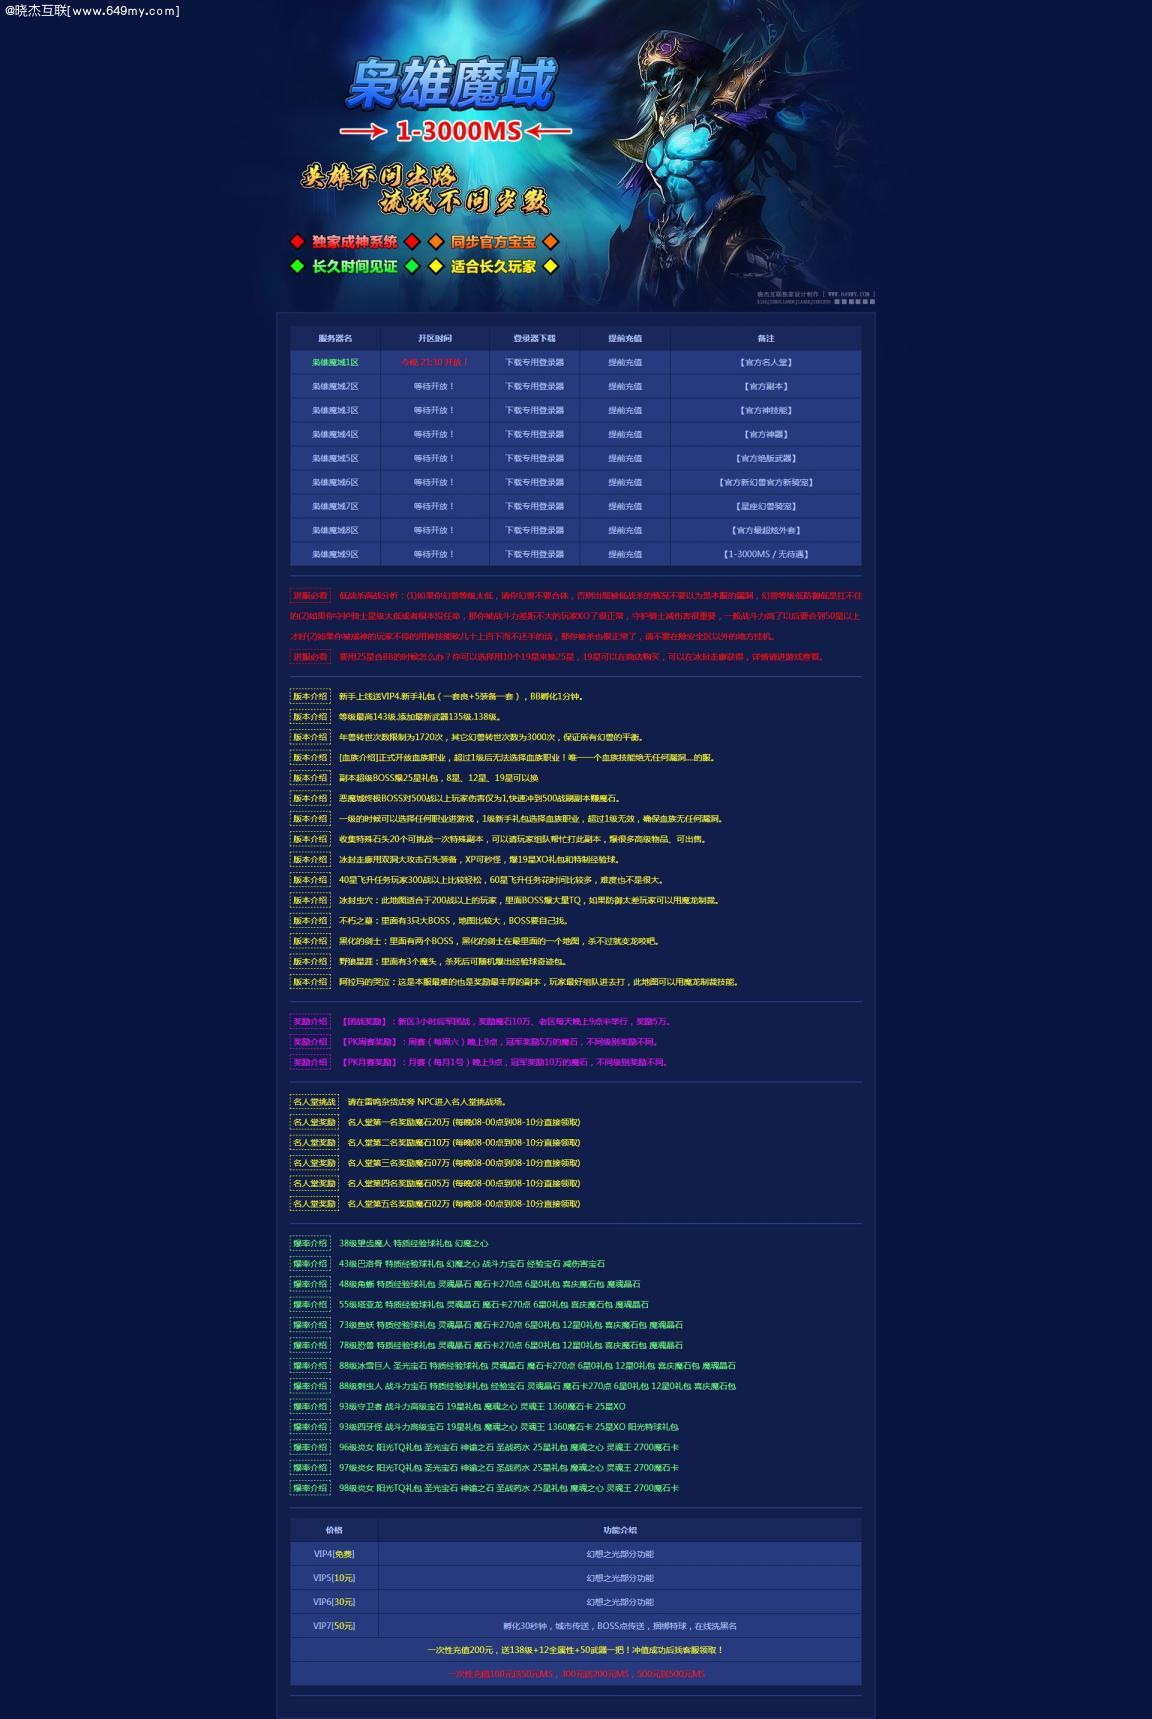 魔域私服蓝色游戏开区网站模版,静态HTML,无后台,代码简洁